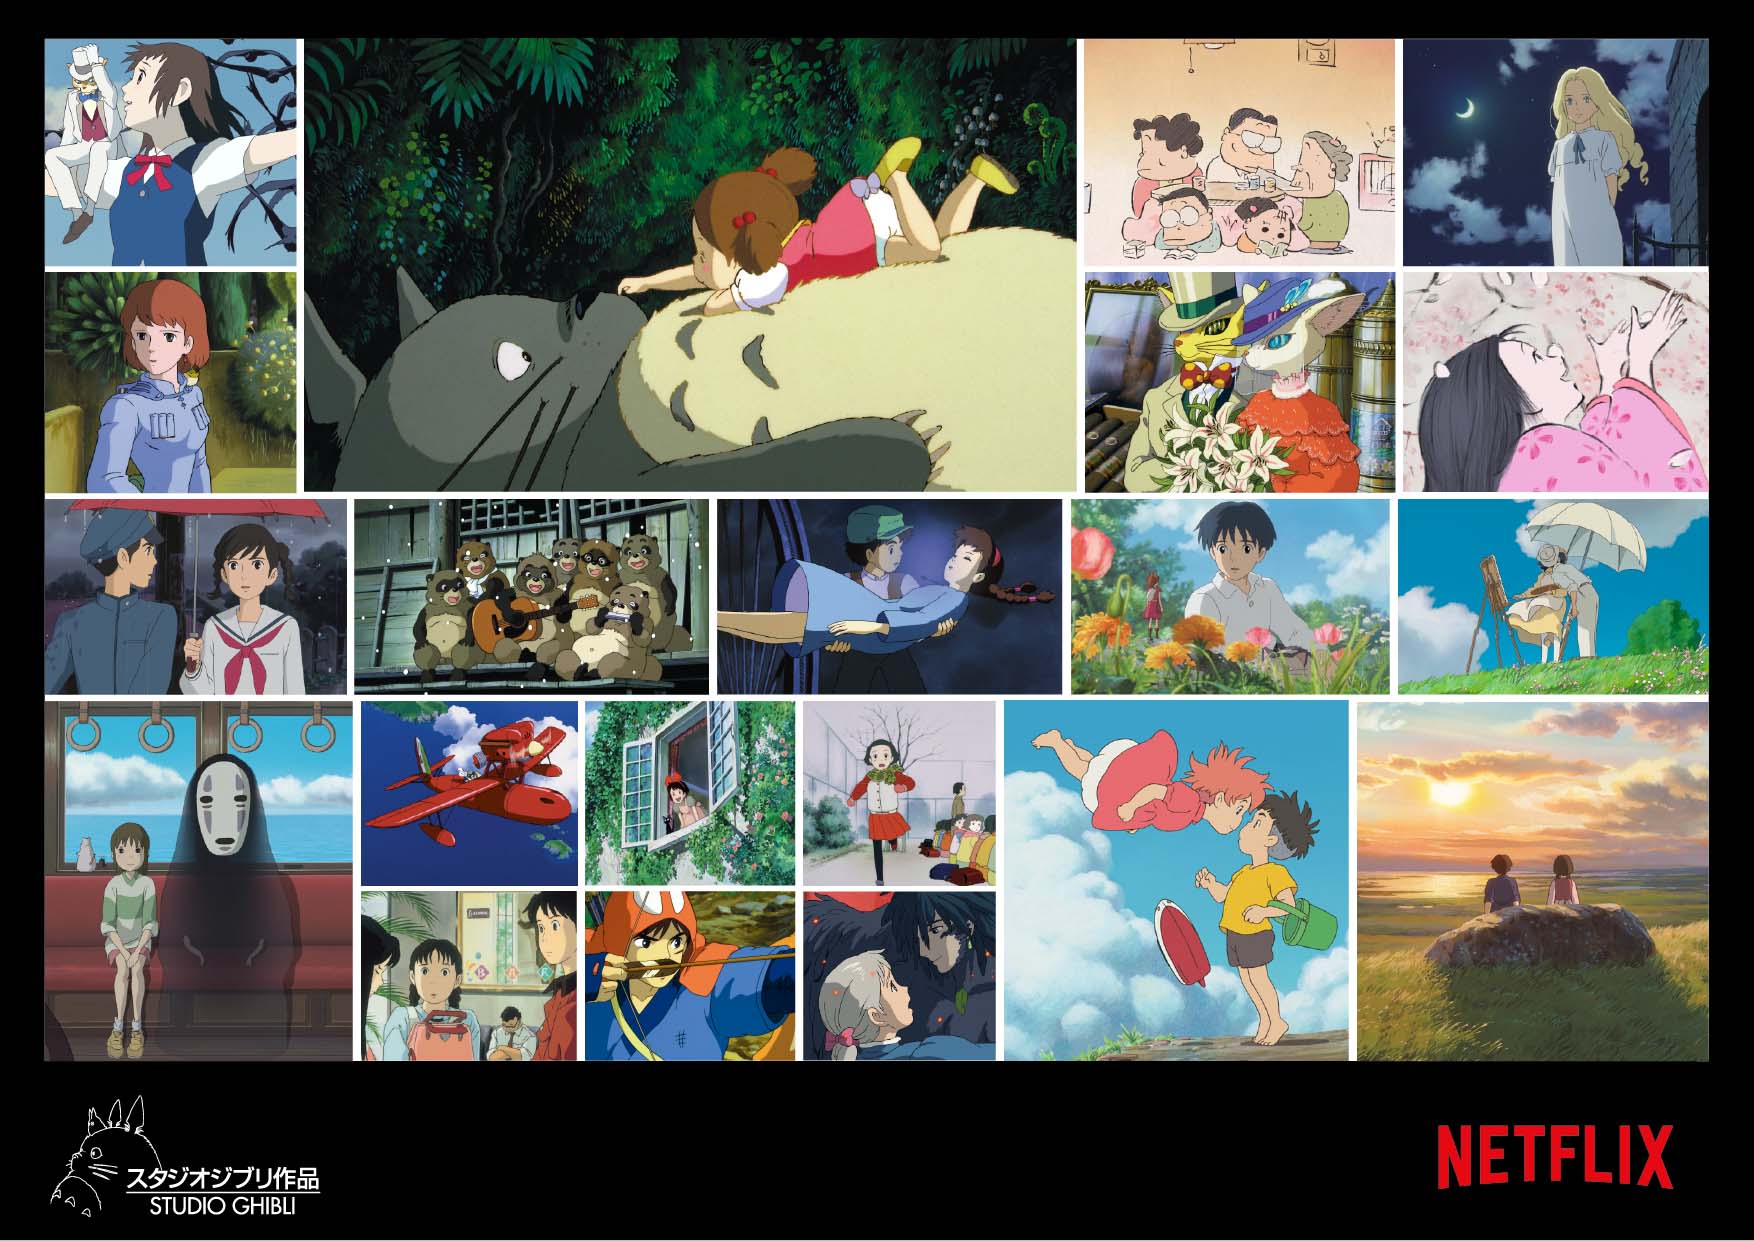 Netflix contará con 21 películas de Ghibli en su catálogo